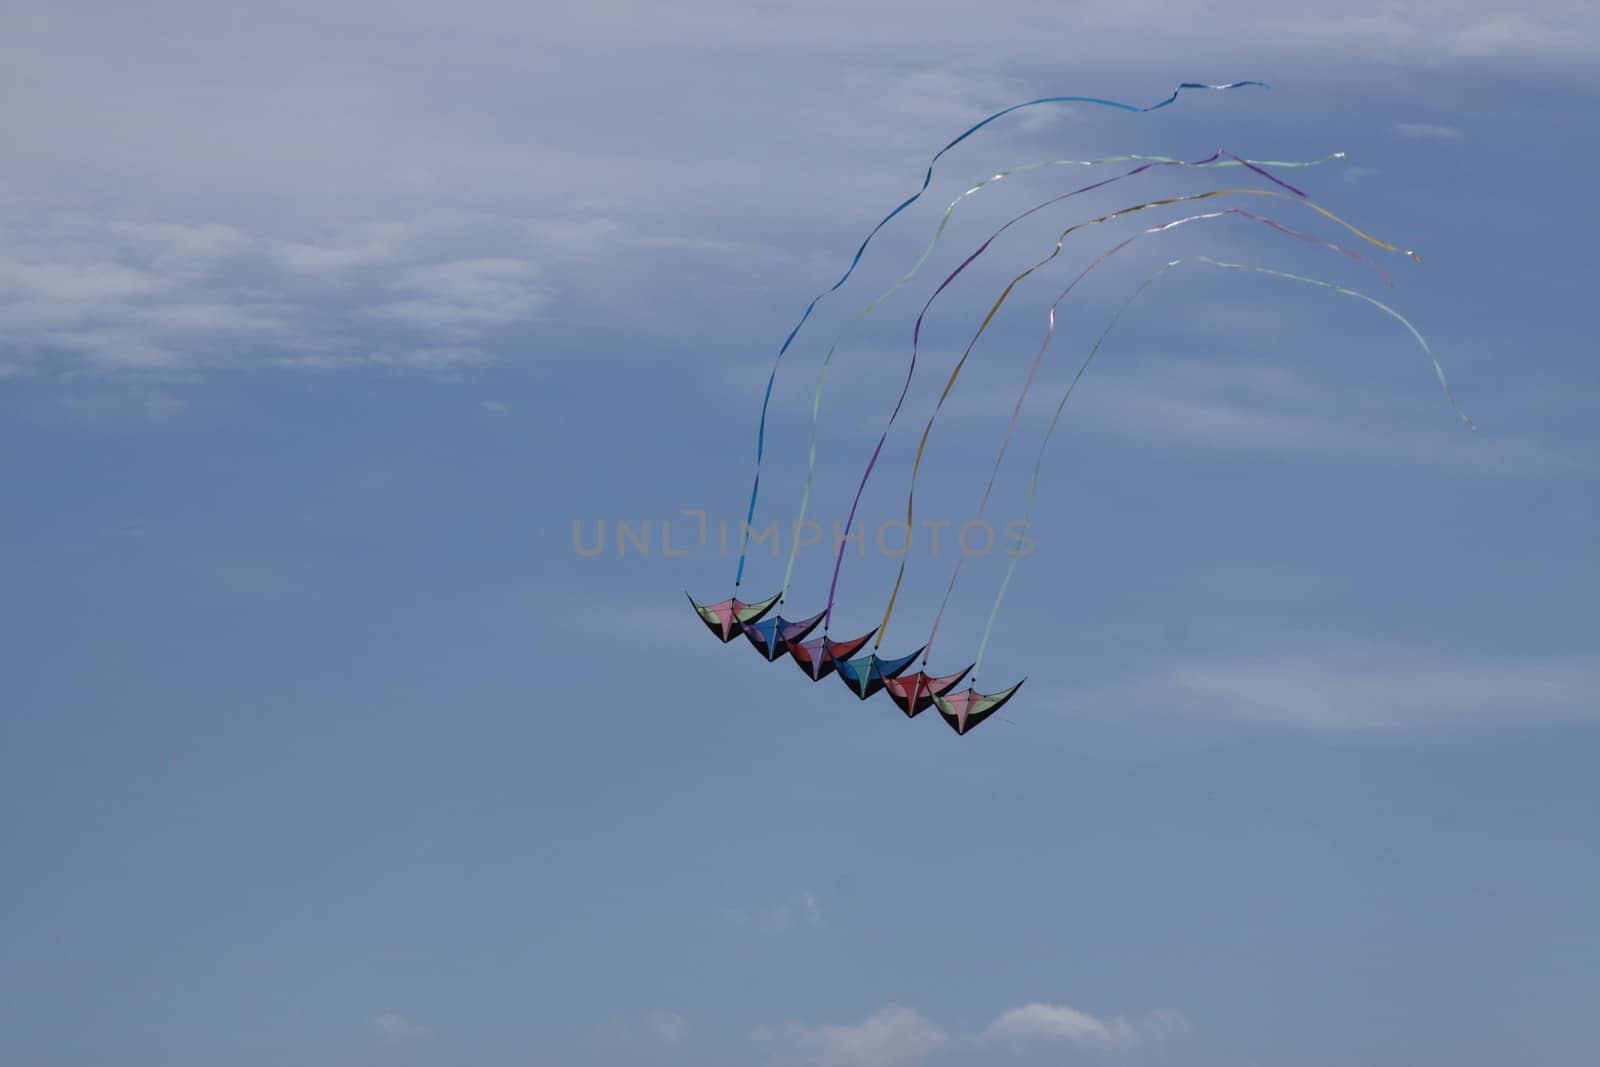 Kites against a blue sky